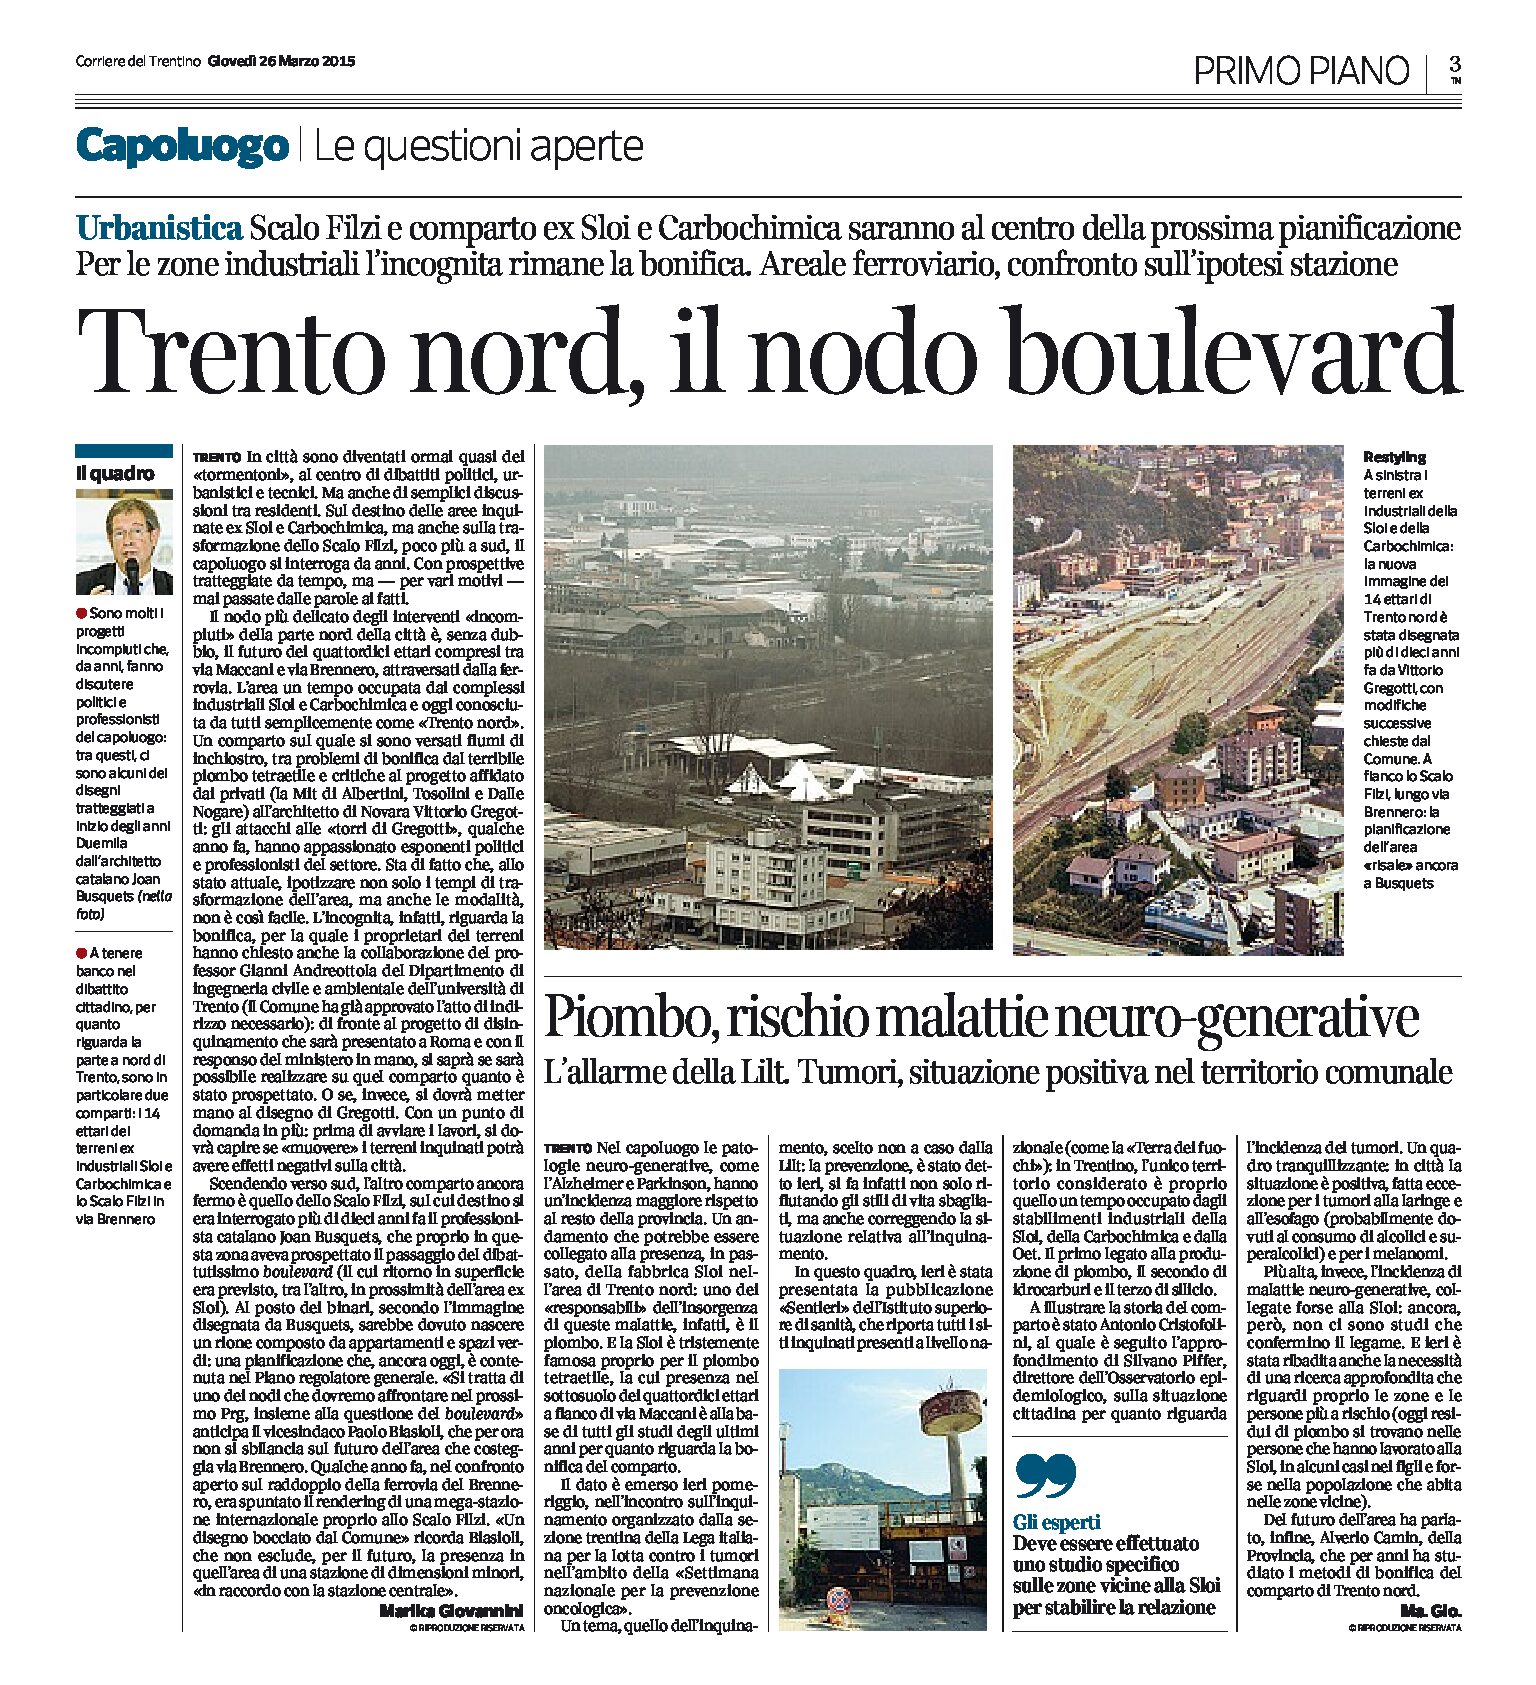 Urbanistica, Trento nord: il nodo boulevard e l’Incognita bonifica per le zone industriali